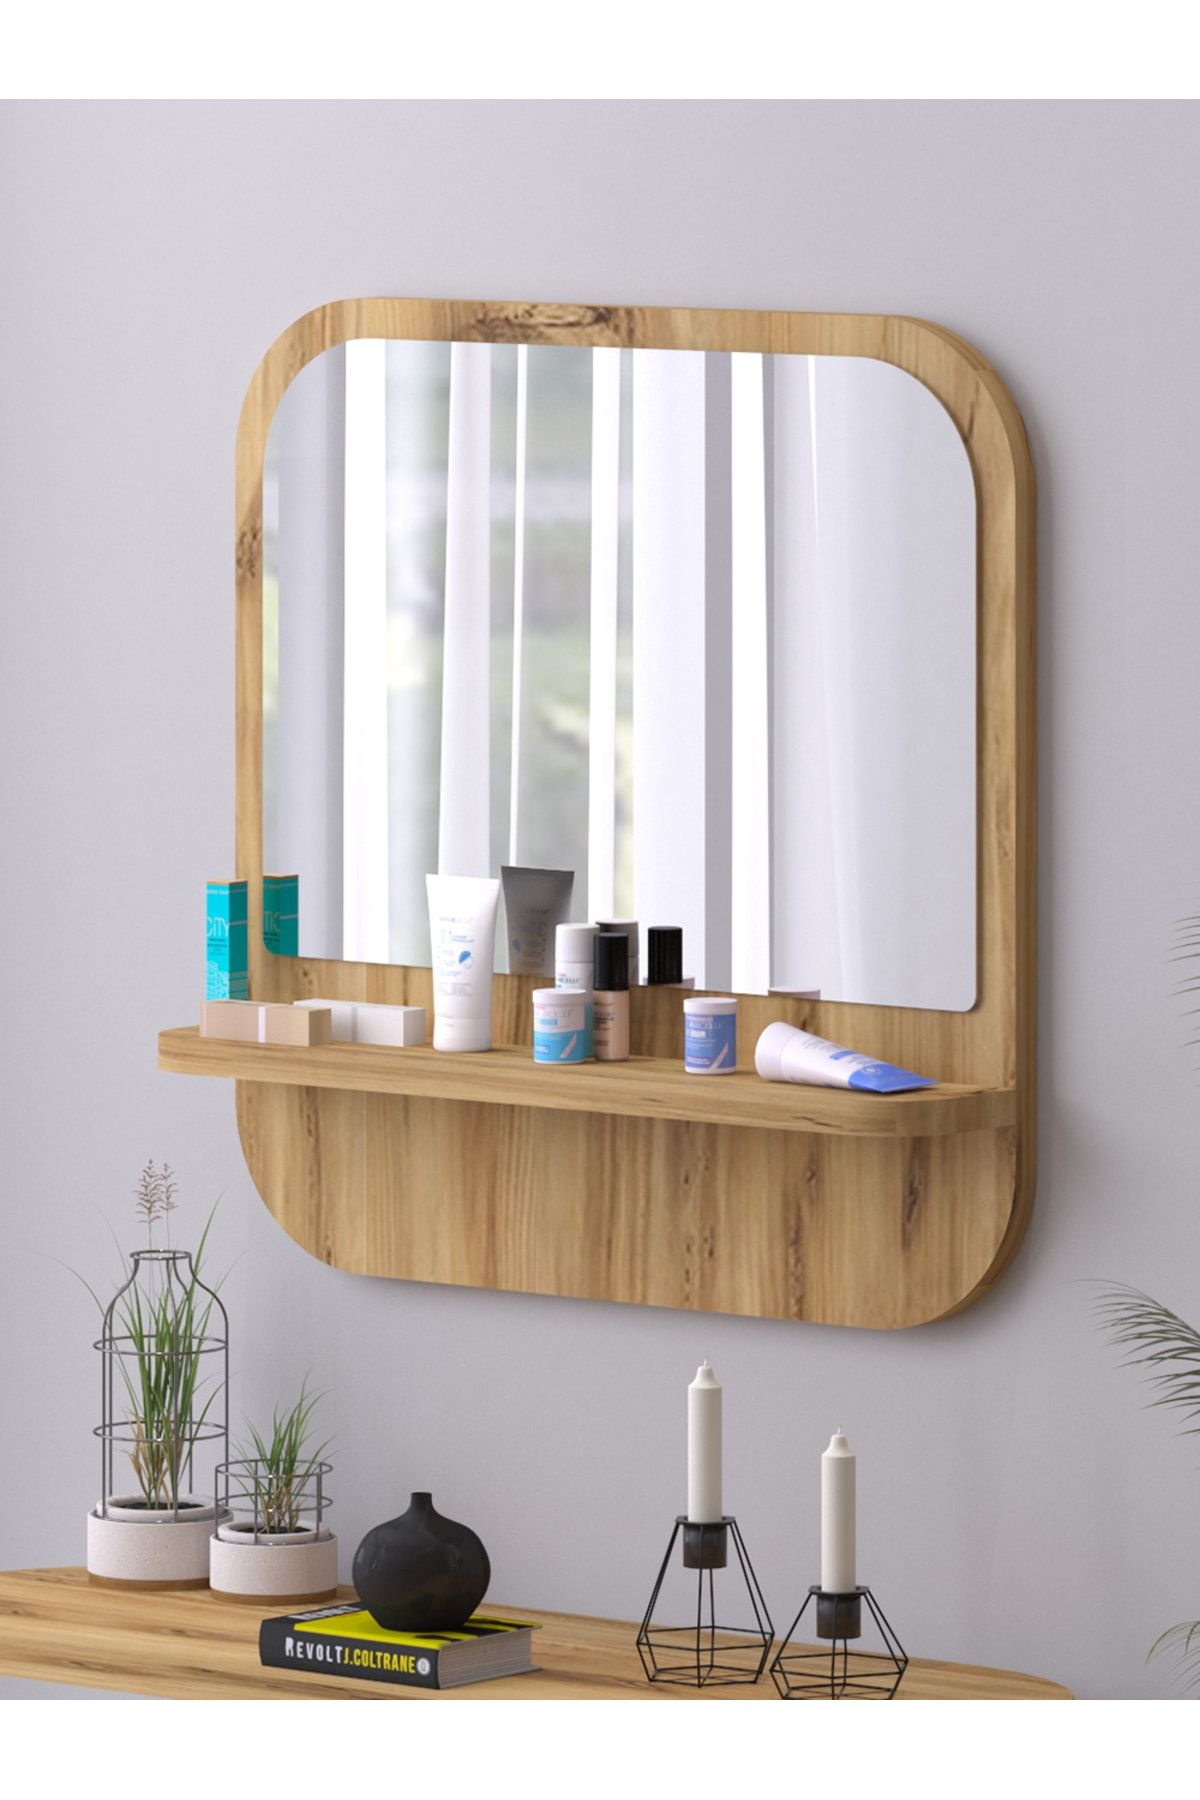 nysamo Raflı Kare 45 cm Koridor Dresuar Konsol Duvar Salon Banyo Ofis Çocuk Yatak Oda raflı Aynası